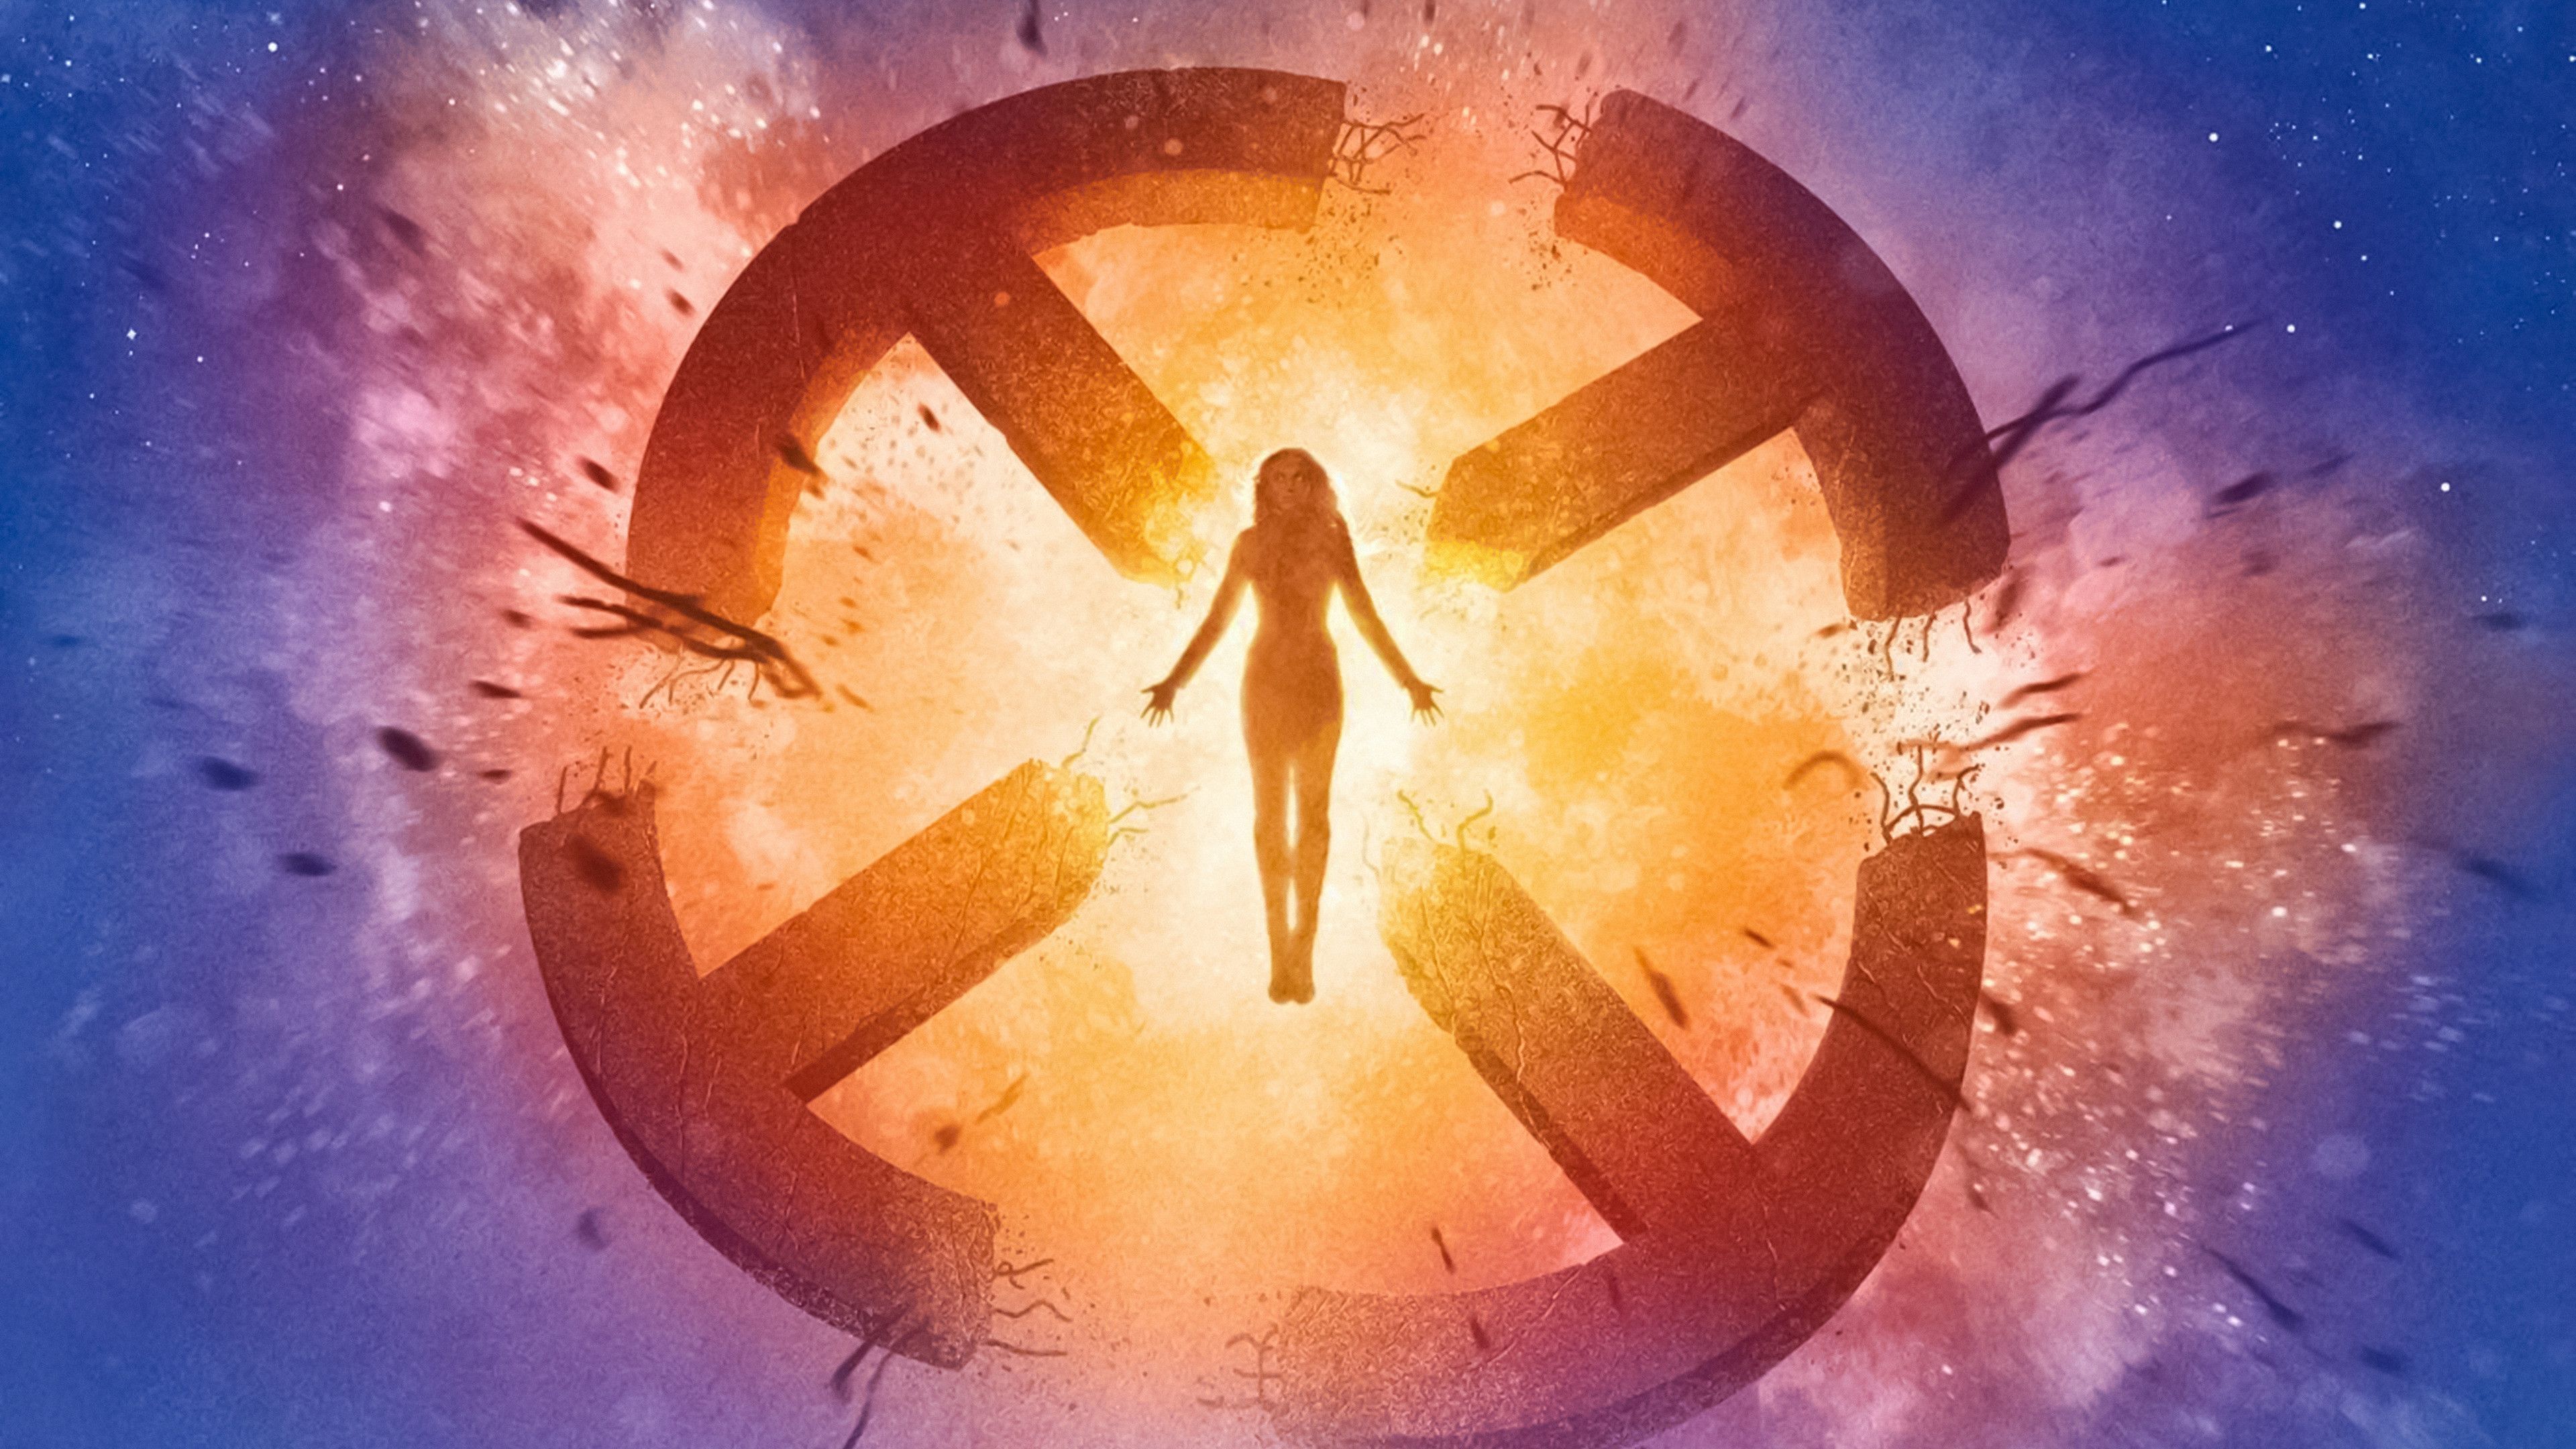 X Men: Dark Phoenix 4K Wallpaper